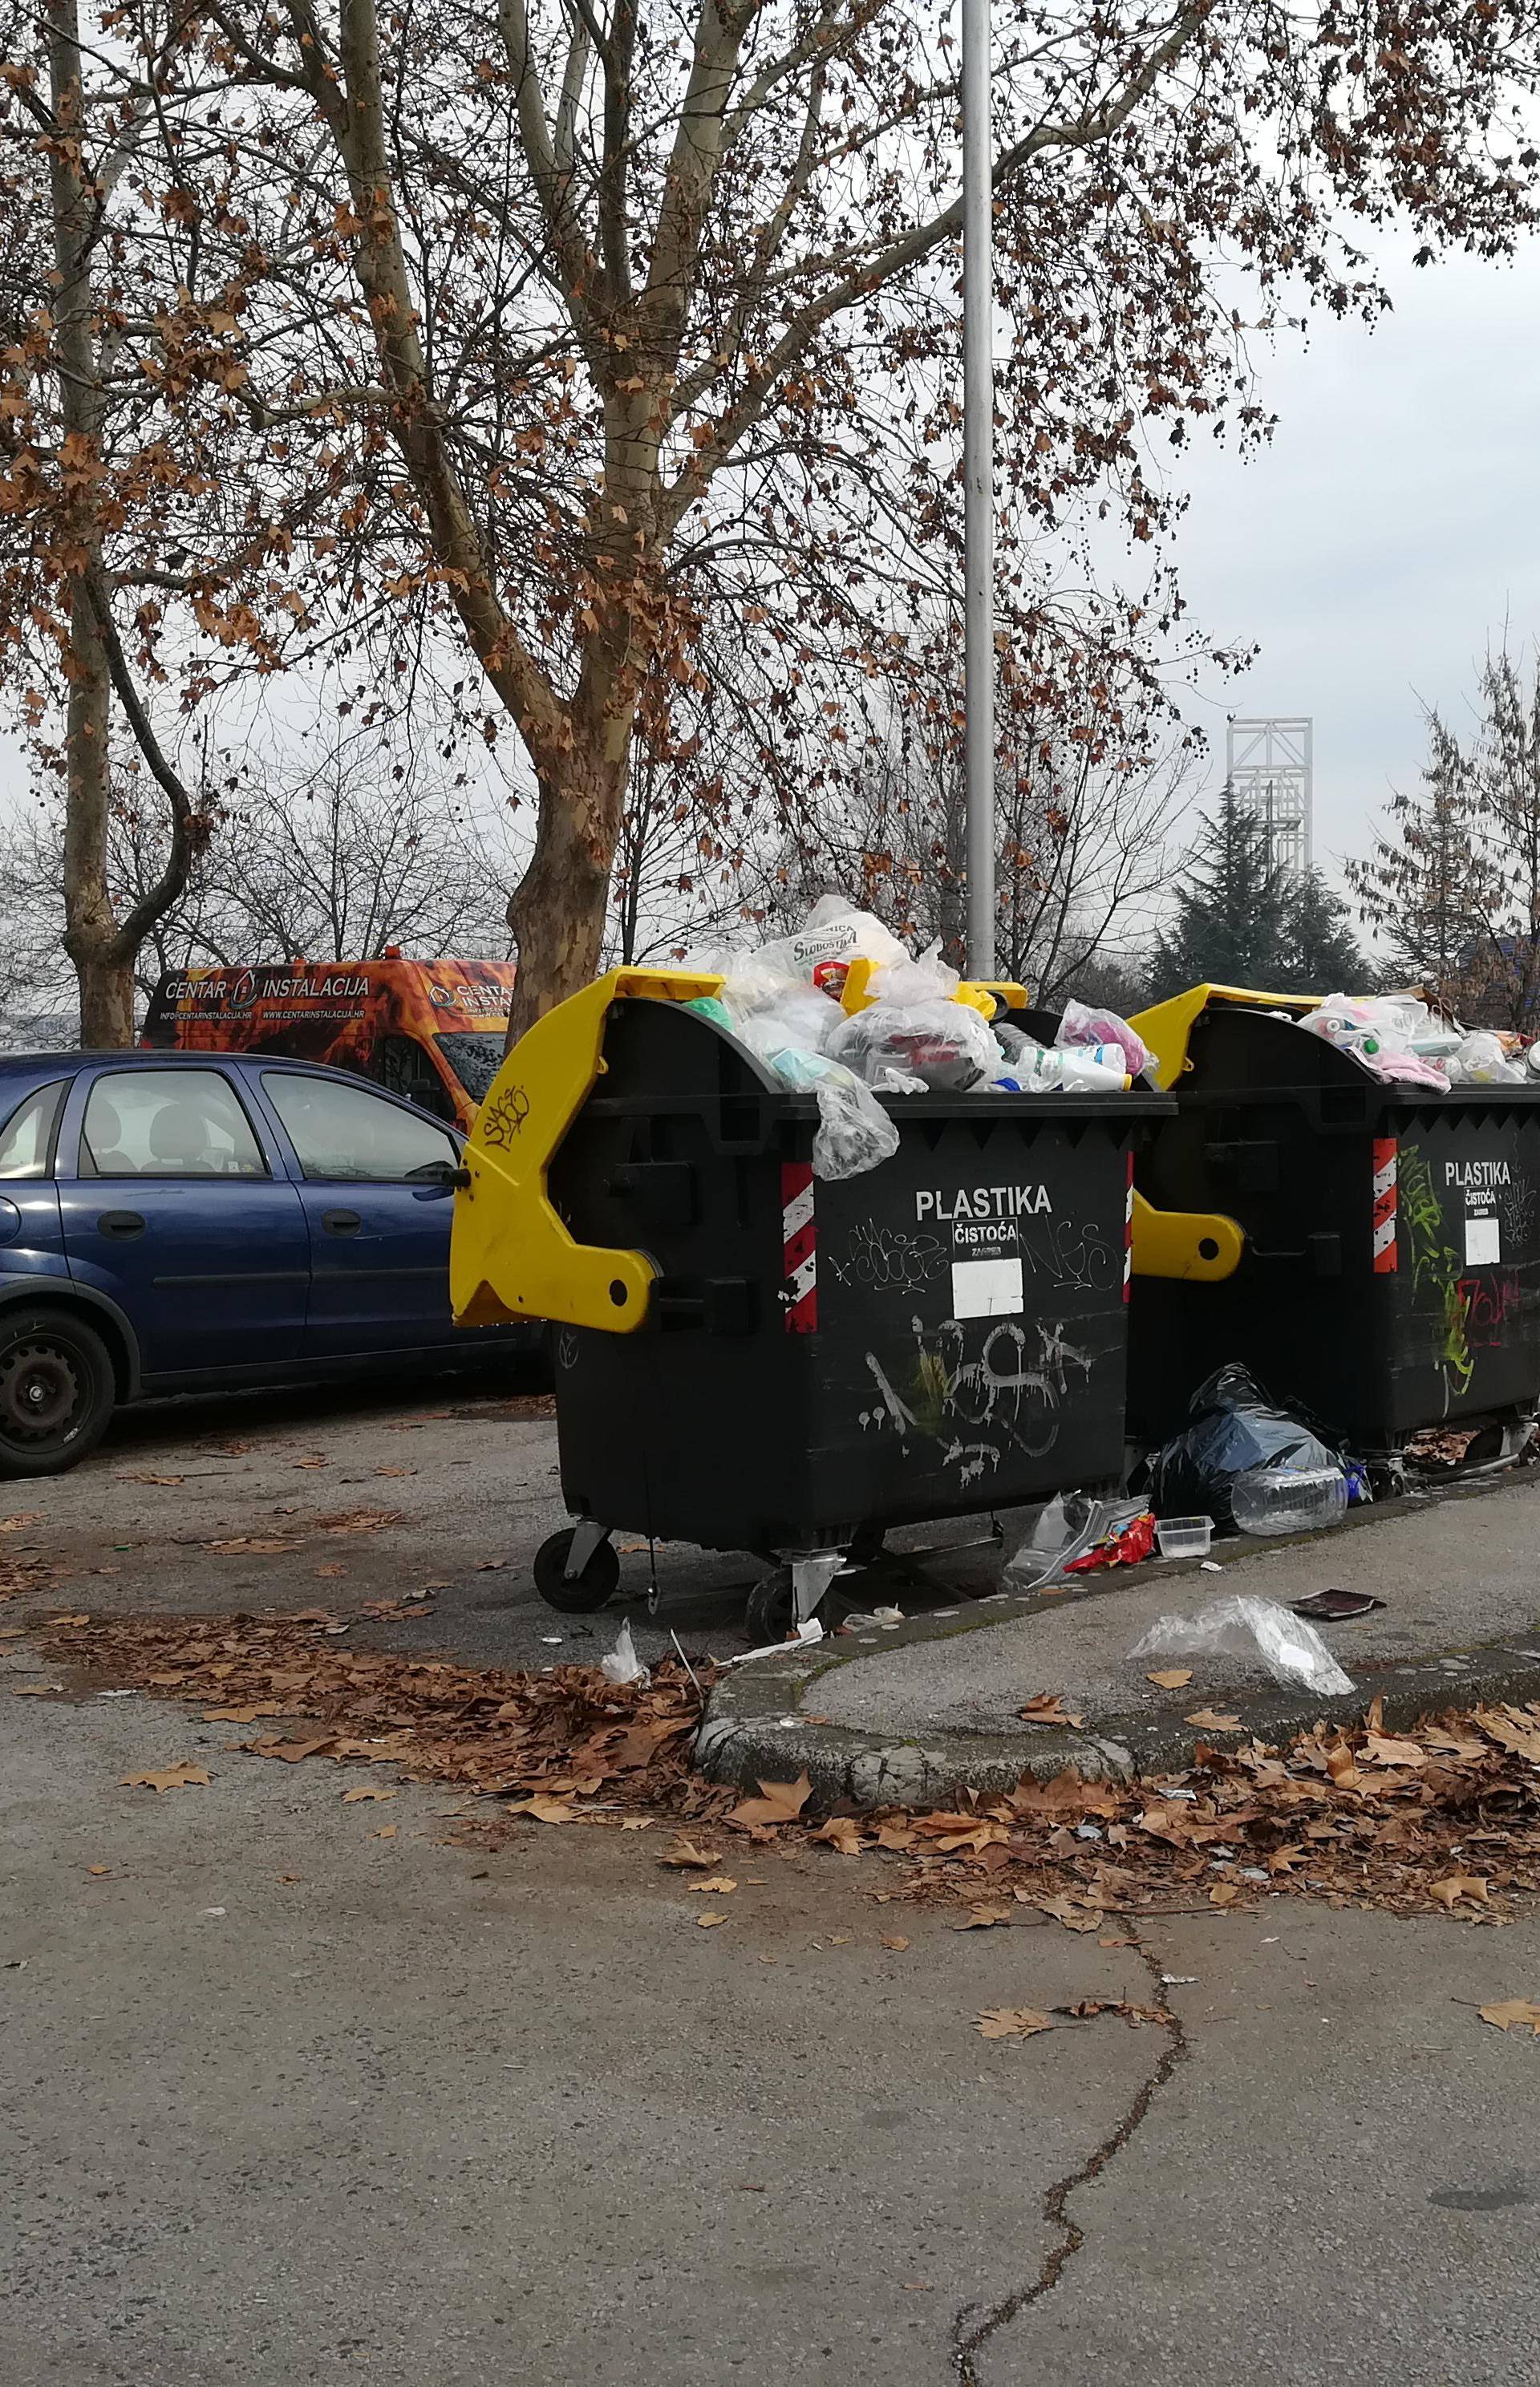 Nered u Zagrebu: Plaćamo da netko preuzme plastični otpad